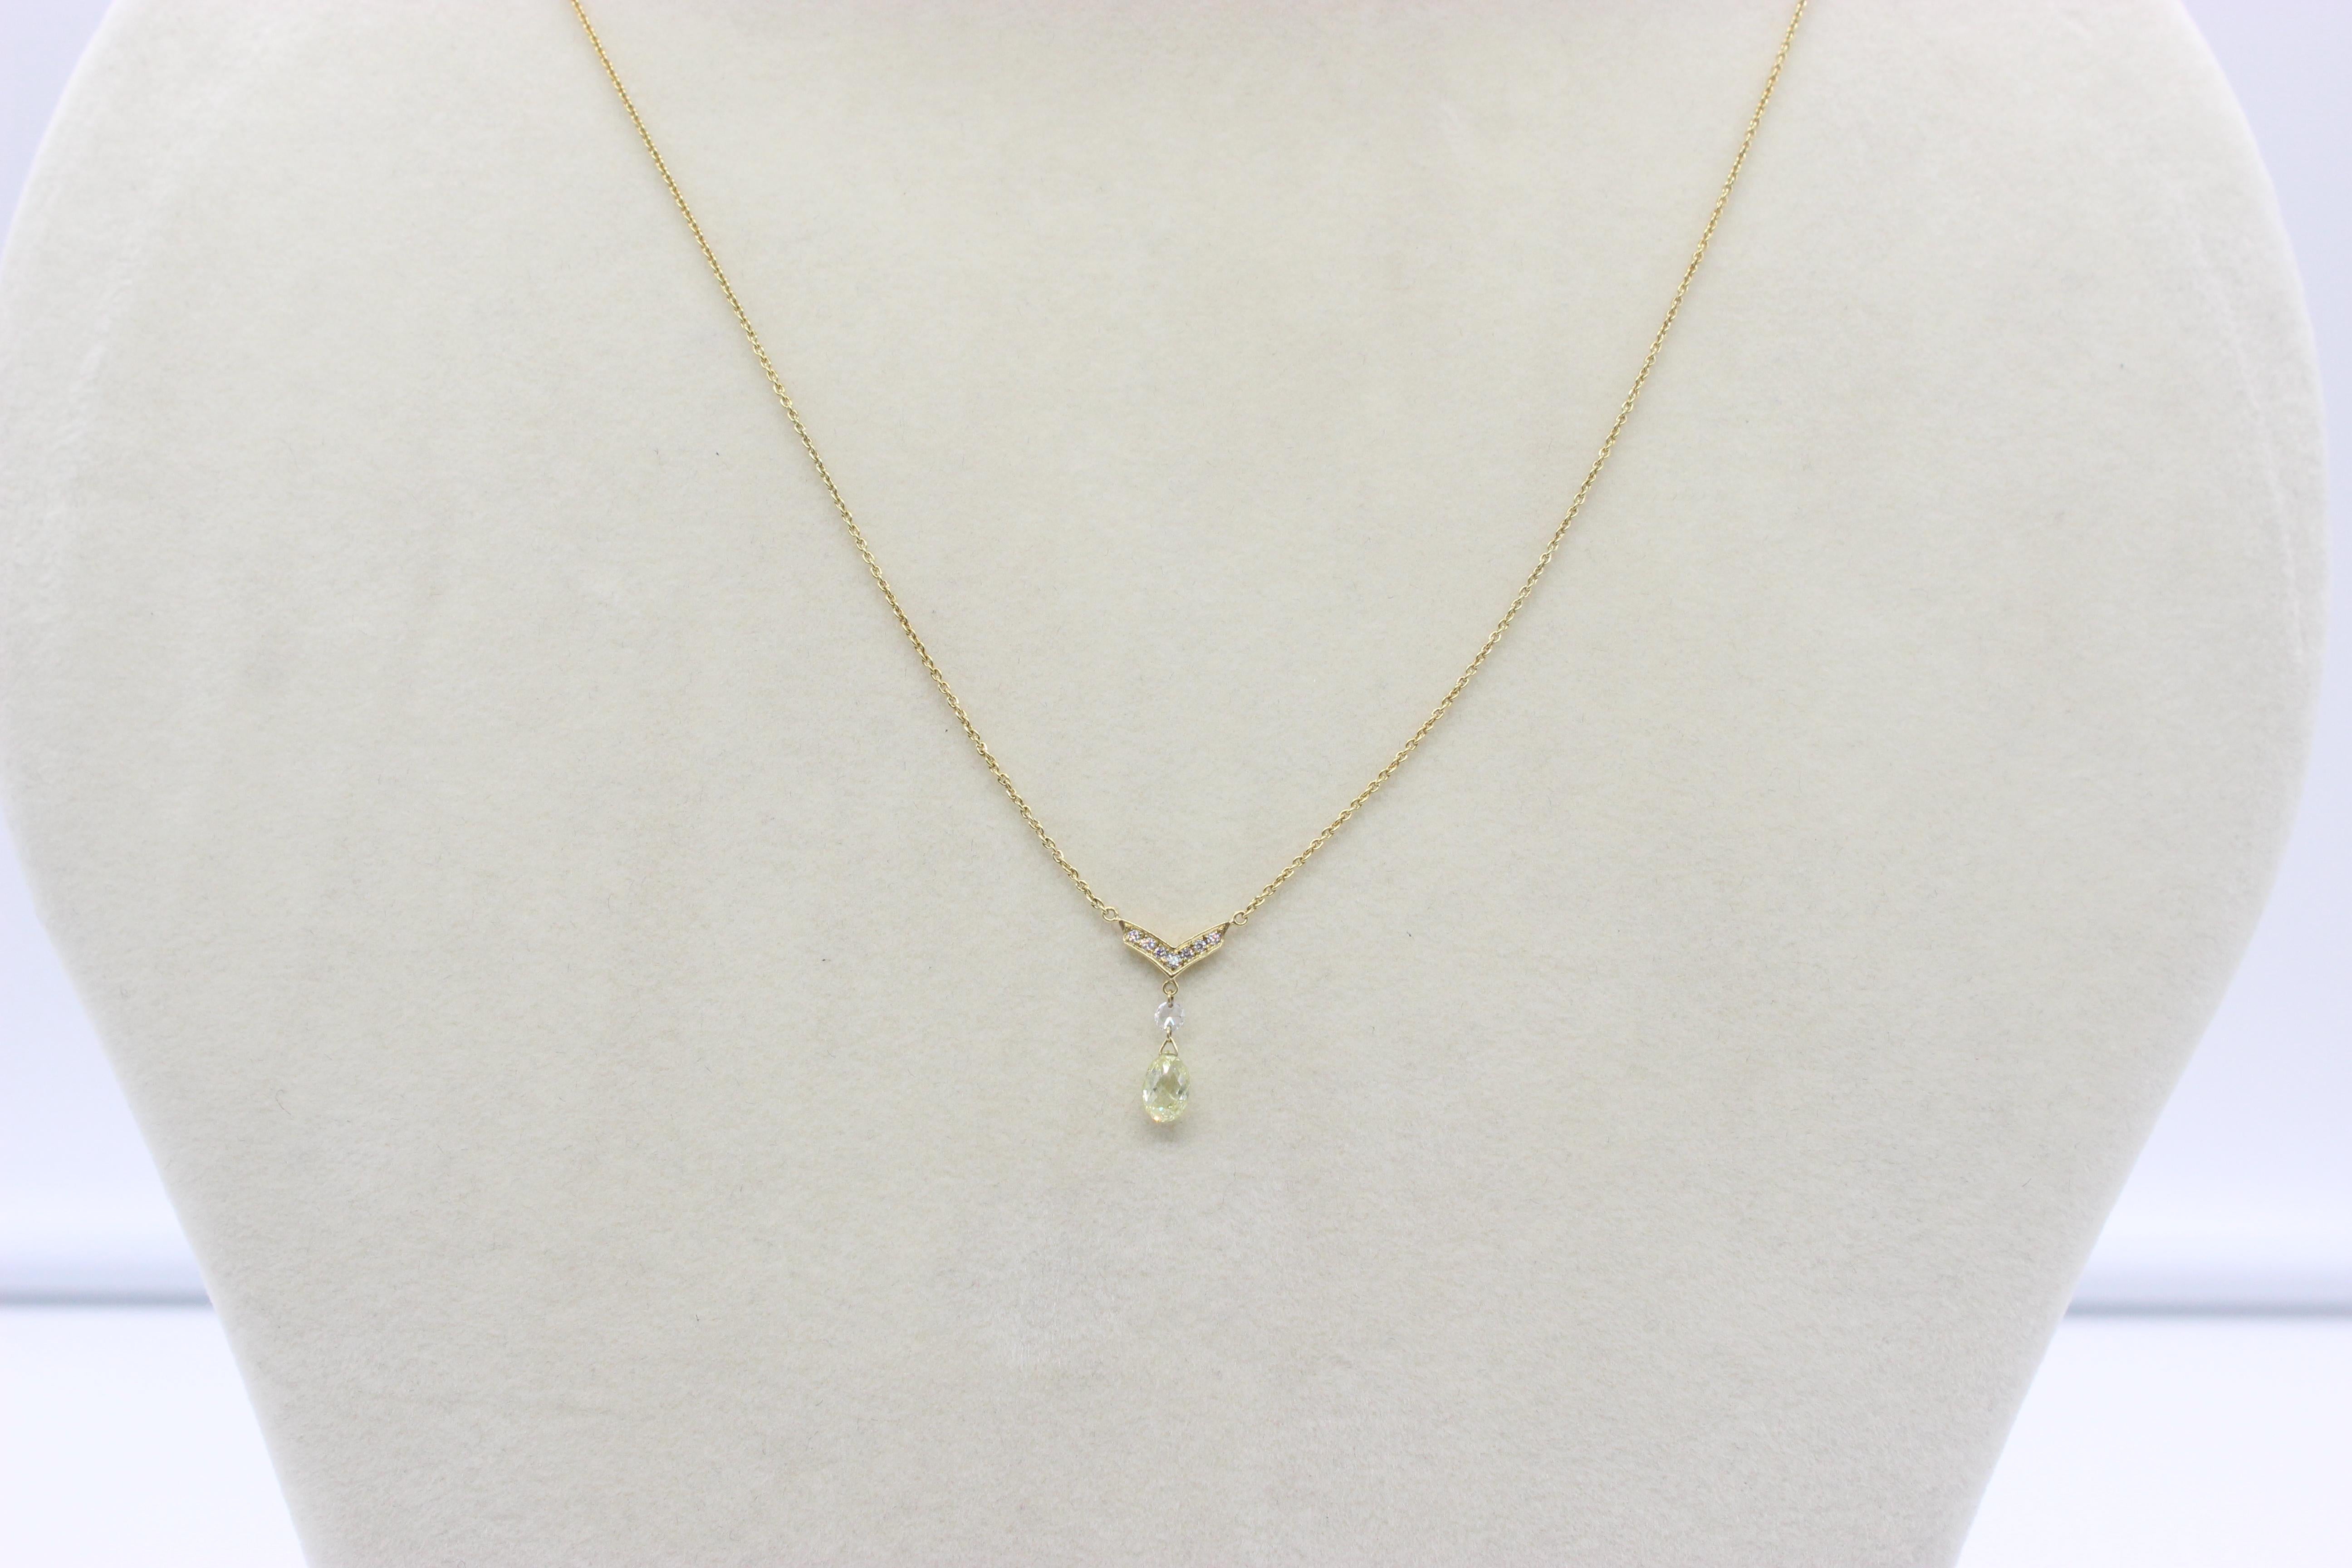 Briolette Cut PANIM 0.57 Carat Diamond Briolette 18K Yellow Gold Pendant Necklace For Sale